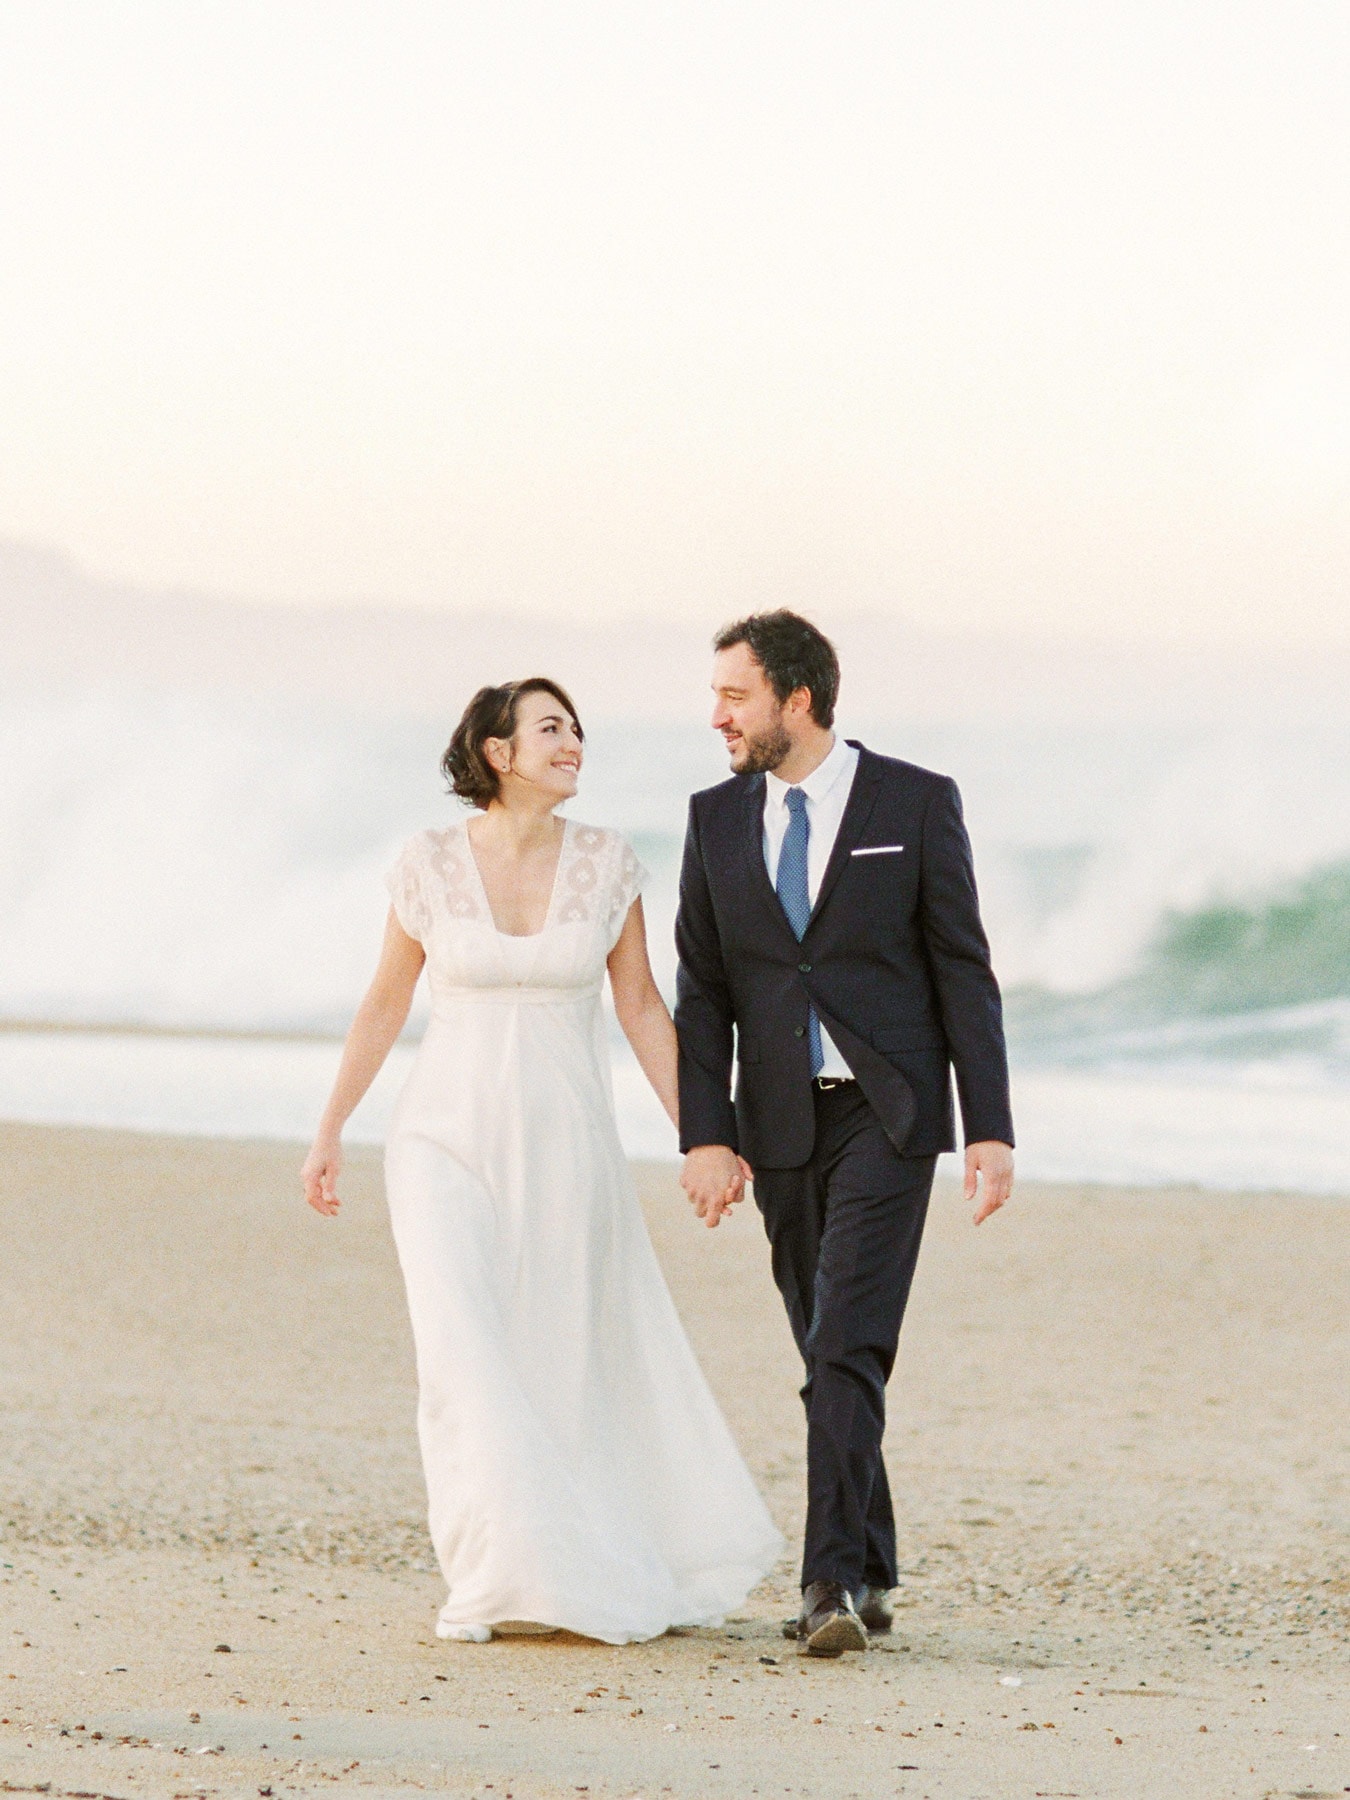 Mariage à la plage inspiration destination wedding